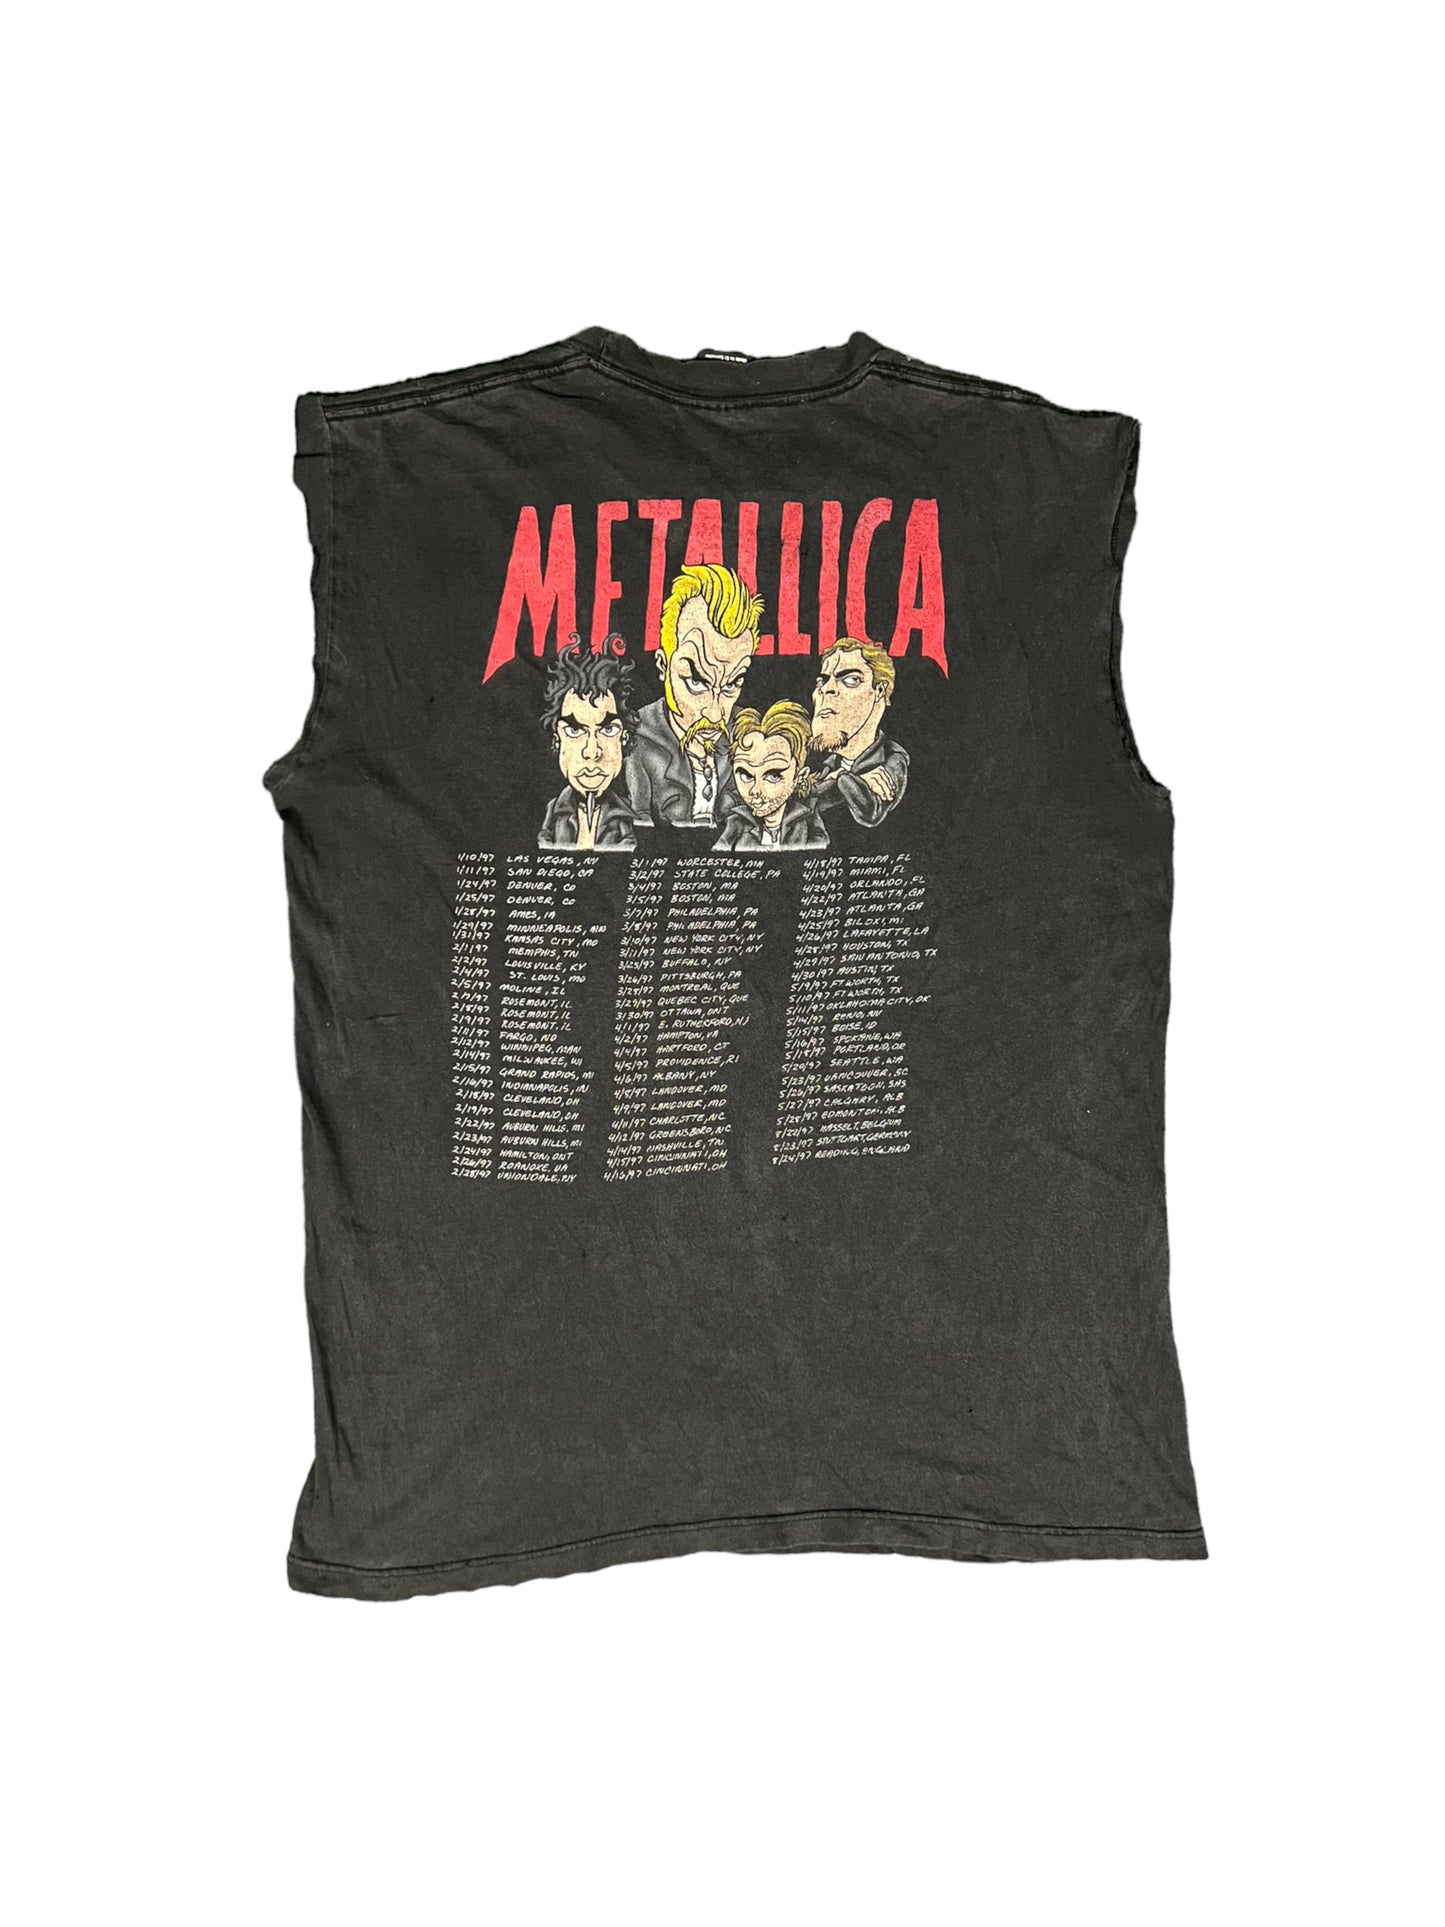 Metallica Vintage T-Shirt '96-'97 Load Tour Dates Rock Band Concert Caricature L